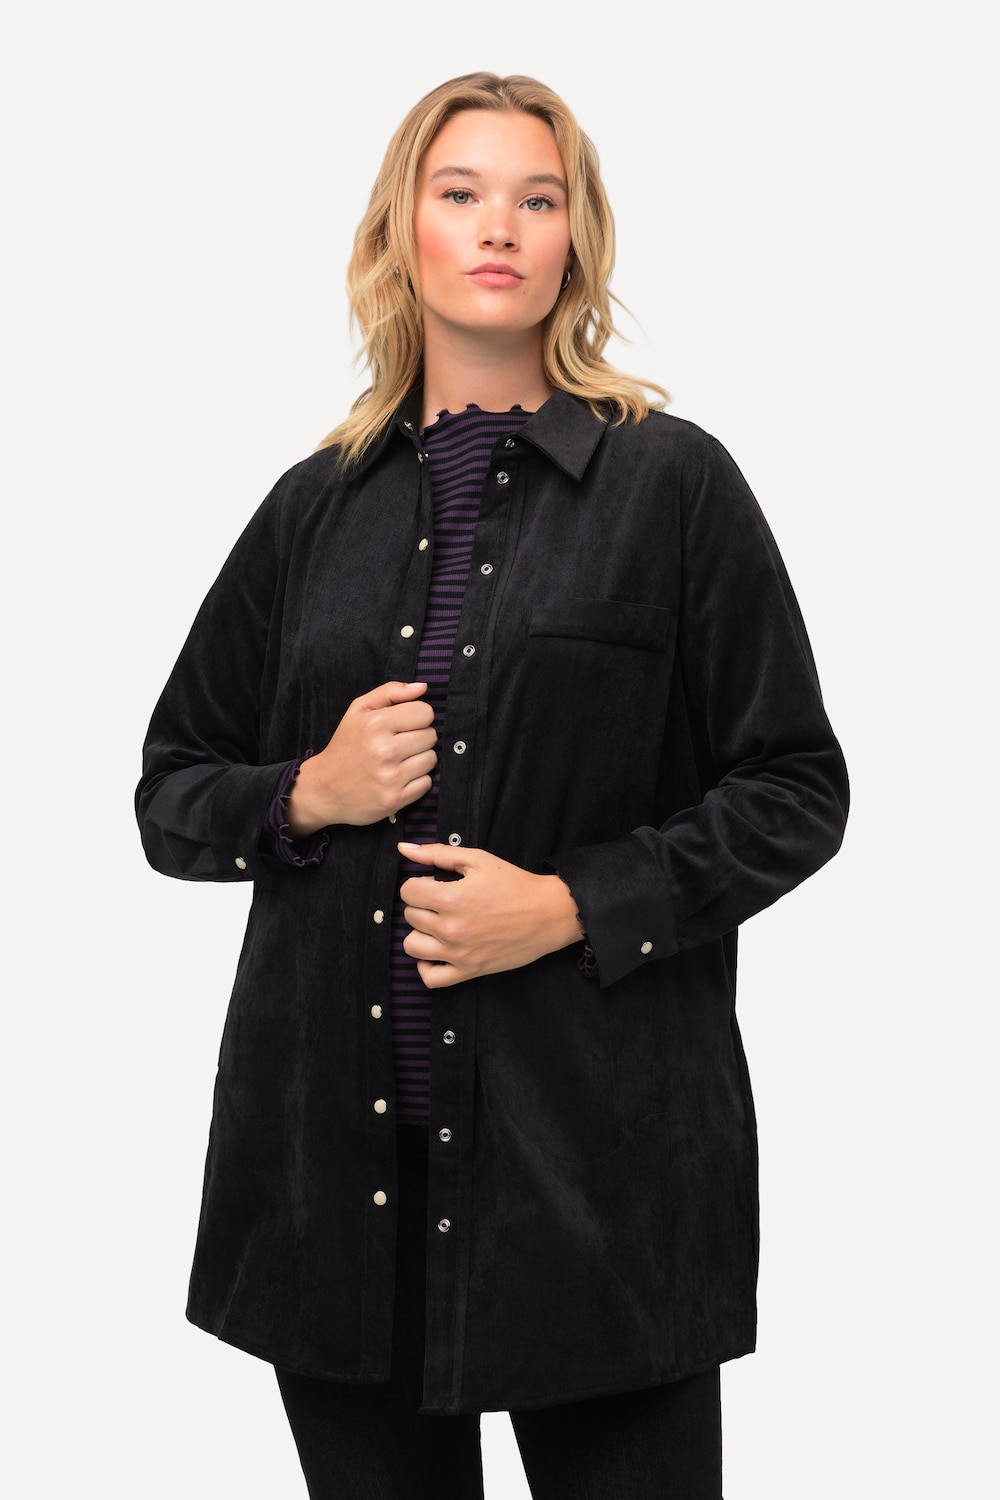 Grote Maten Corduroy blouse, Dames, zwart, Maat: 50/52, Polyester/Synthetische vezels, Ulla Popken